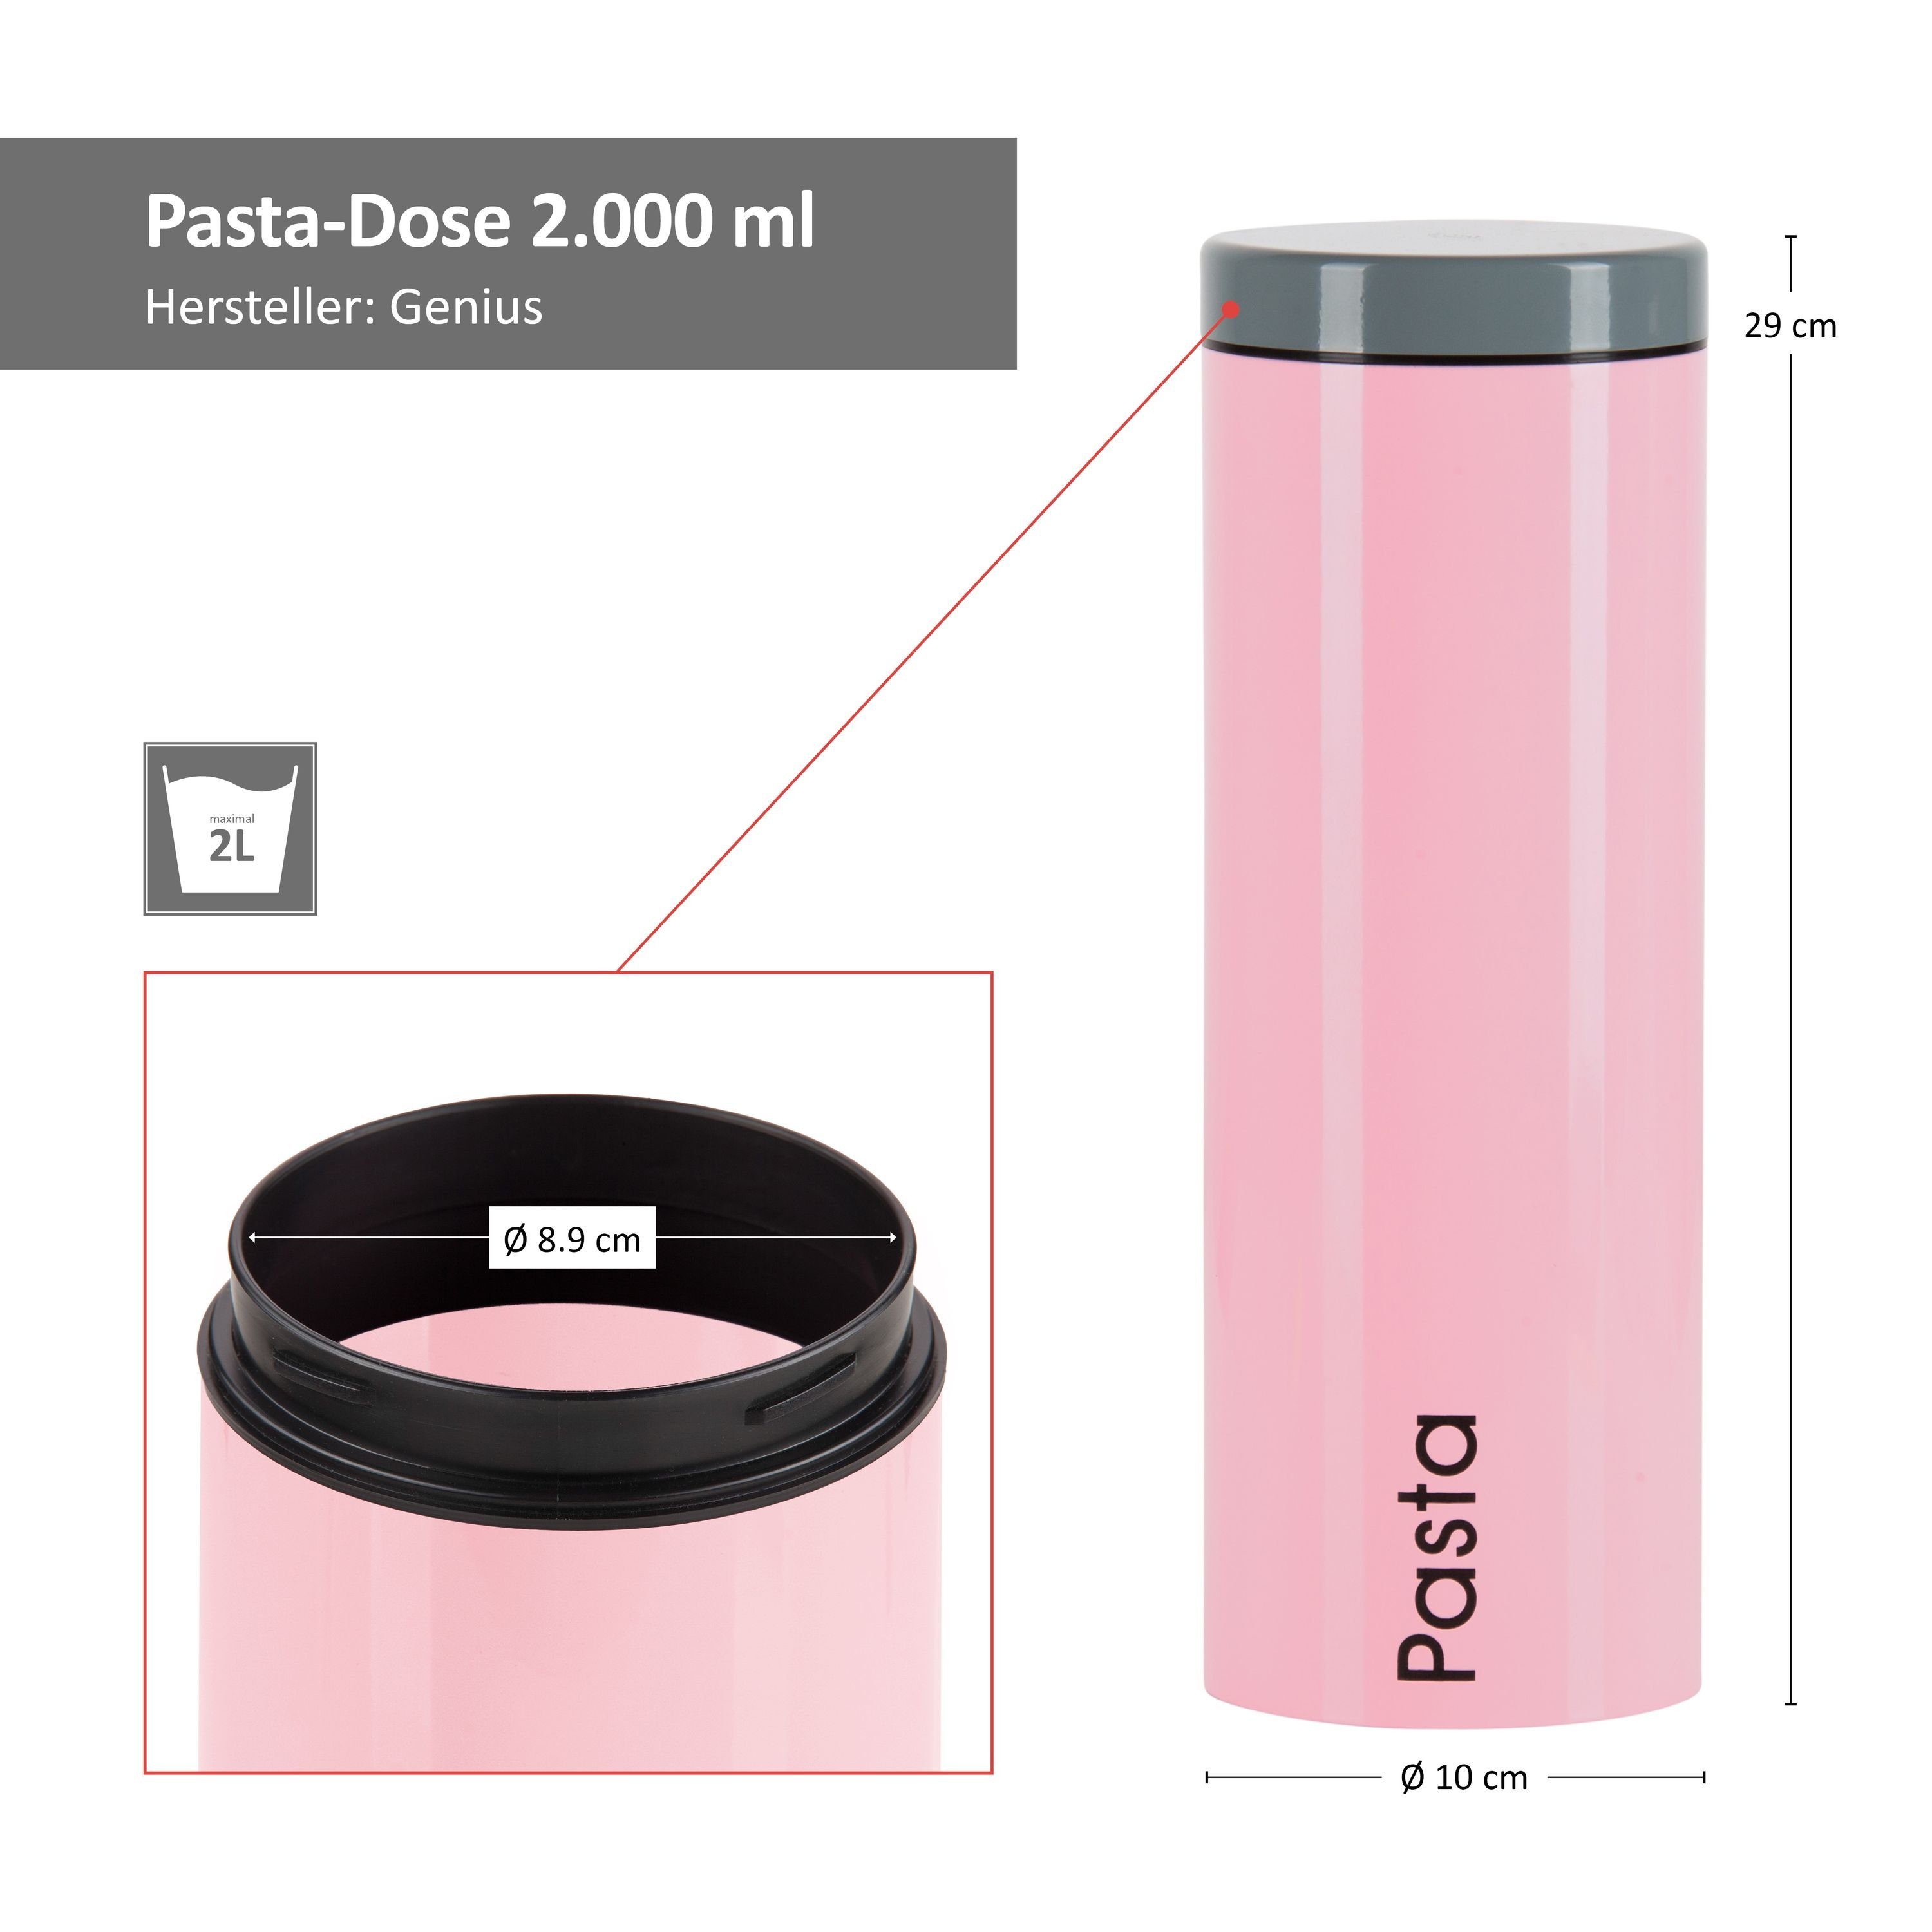 3er Metall + Vorratsdosen Genius: Genius Pasta Set Vorratsglas Pink Sugar, + Coffee